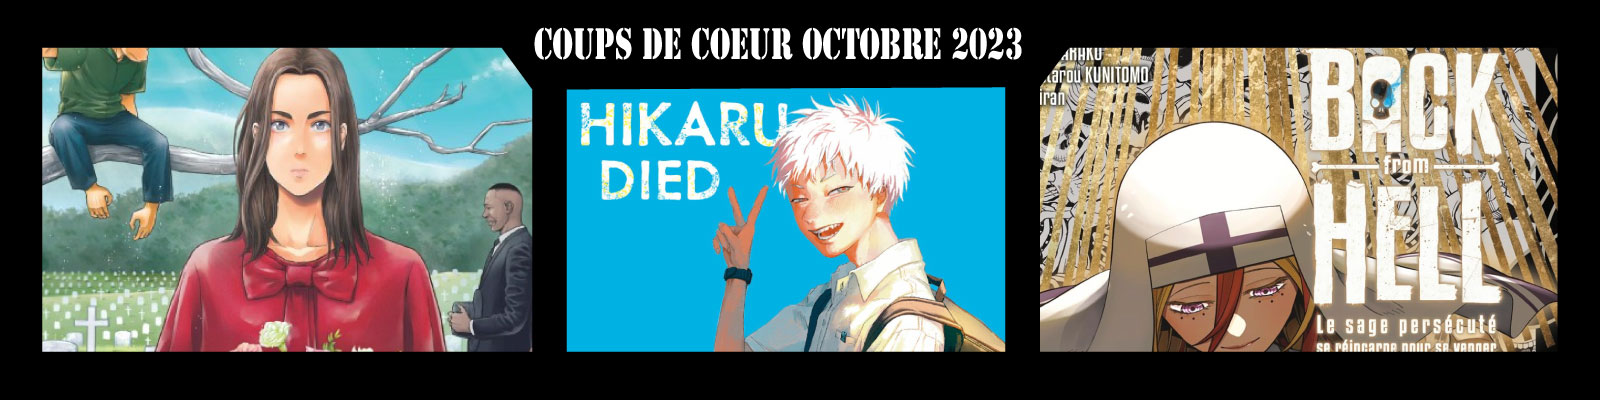 Coups-de-coeur-octobre 2023--2